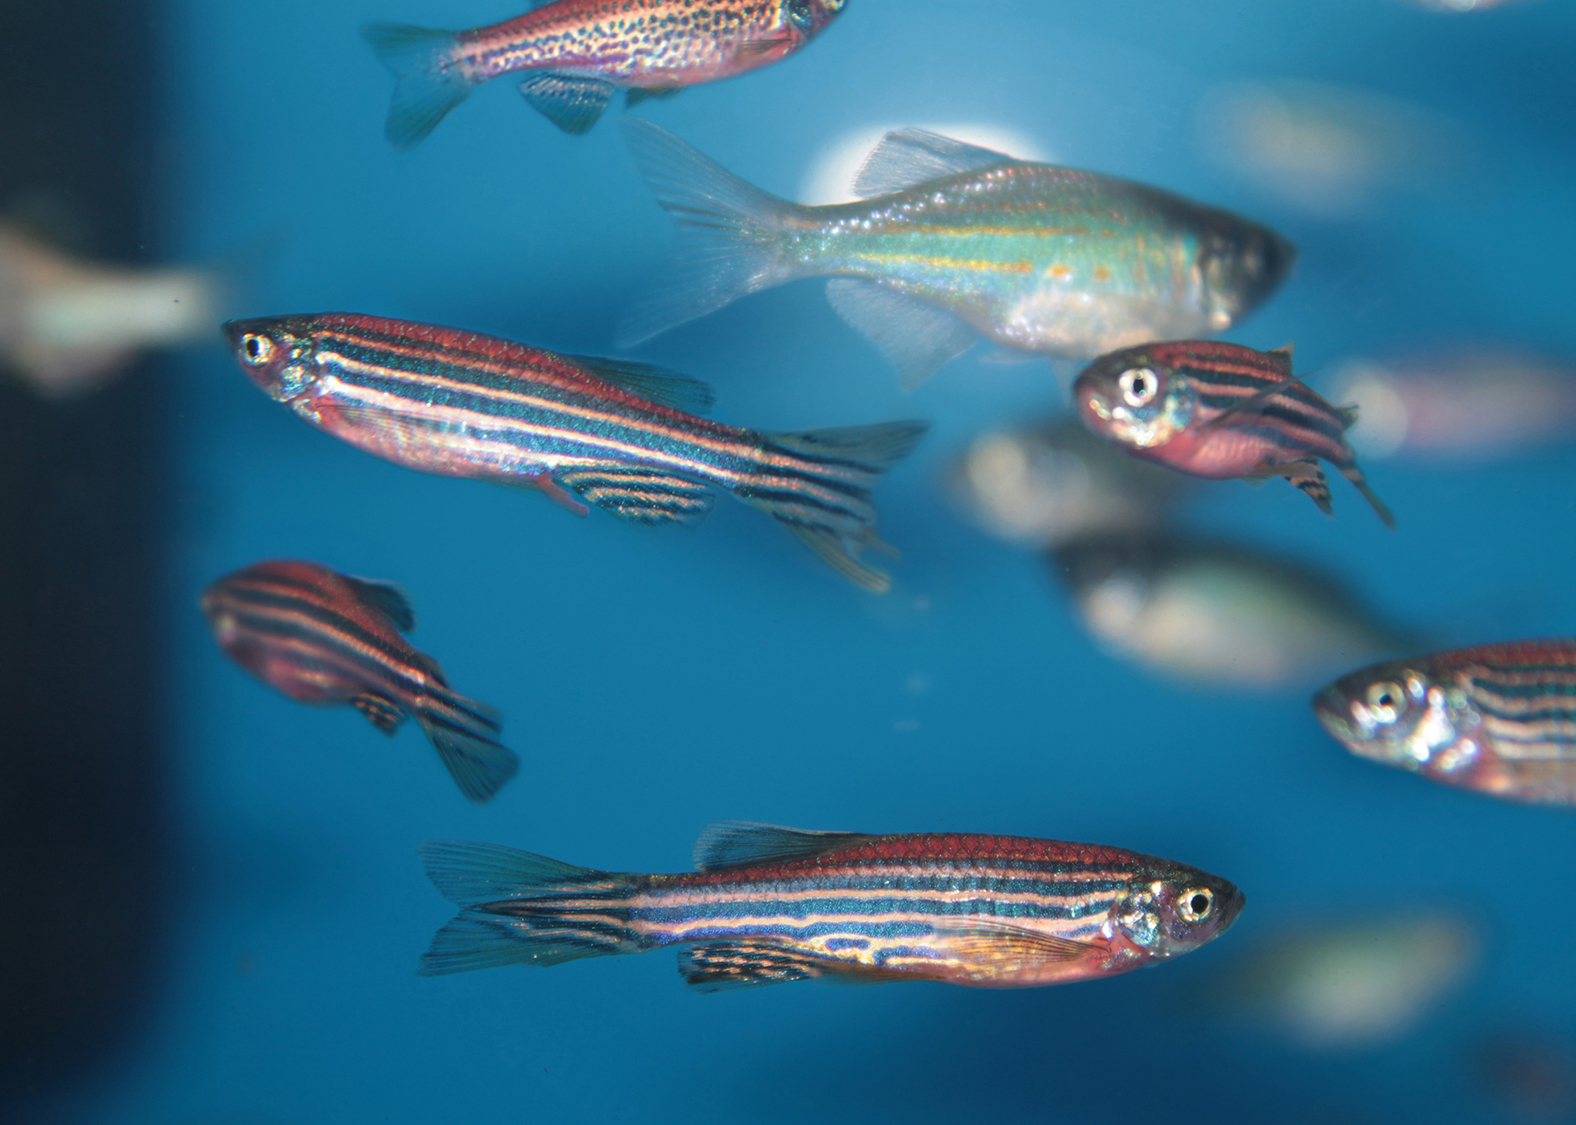 NIH zebrafish research included in U.S. Postal Service's “Life